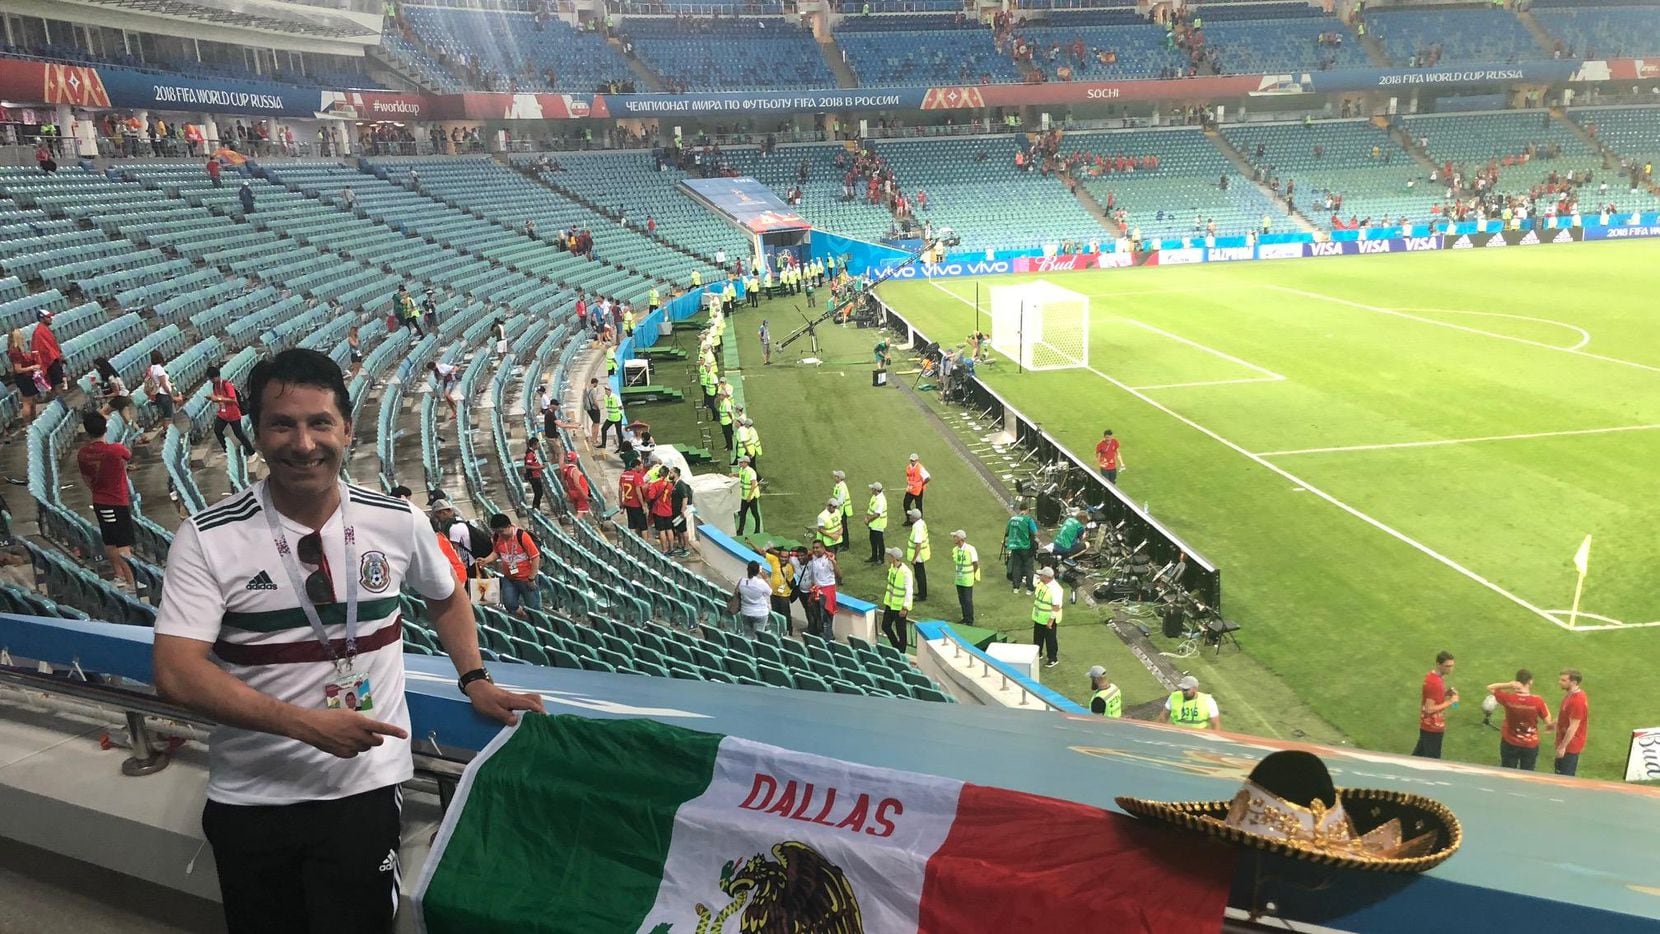 Raúl Arriaga de Dallas llevó una bandera mexicana con el nombre de “Dallas, Texas” en su...